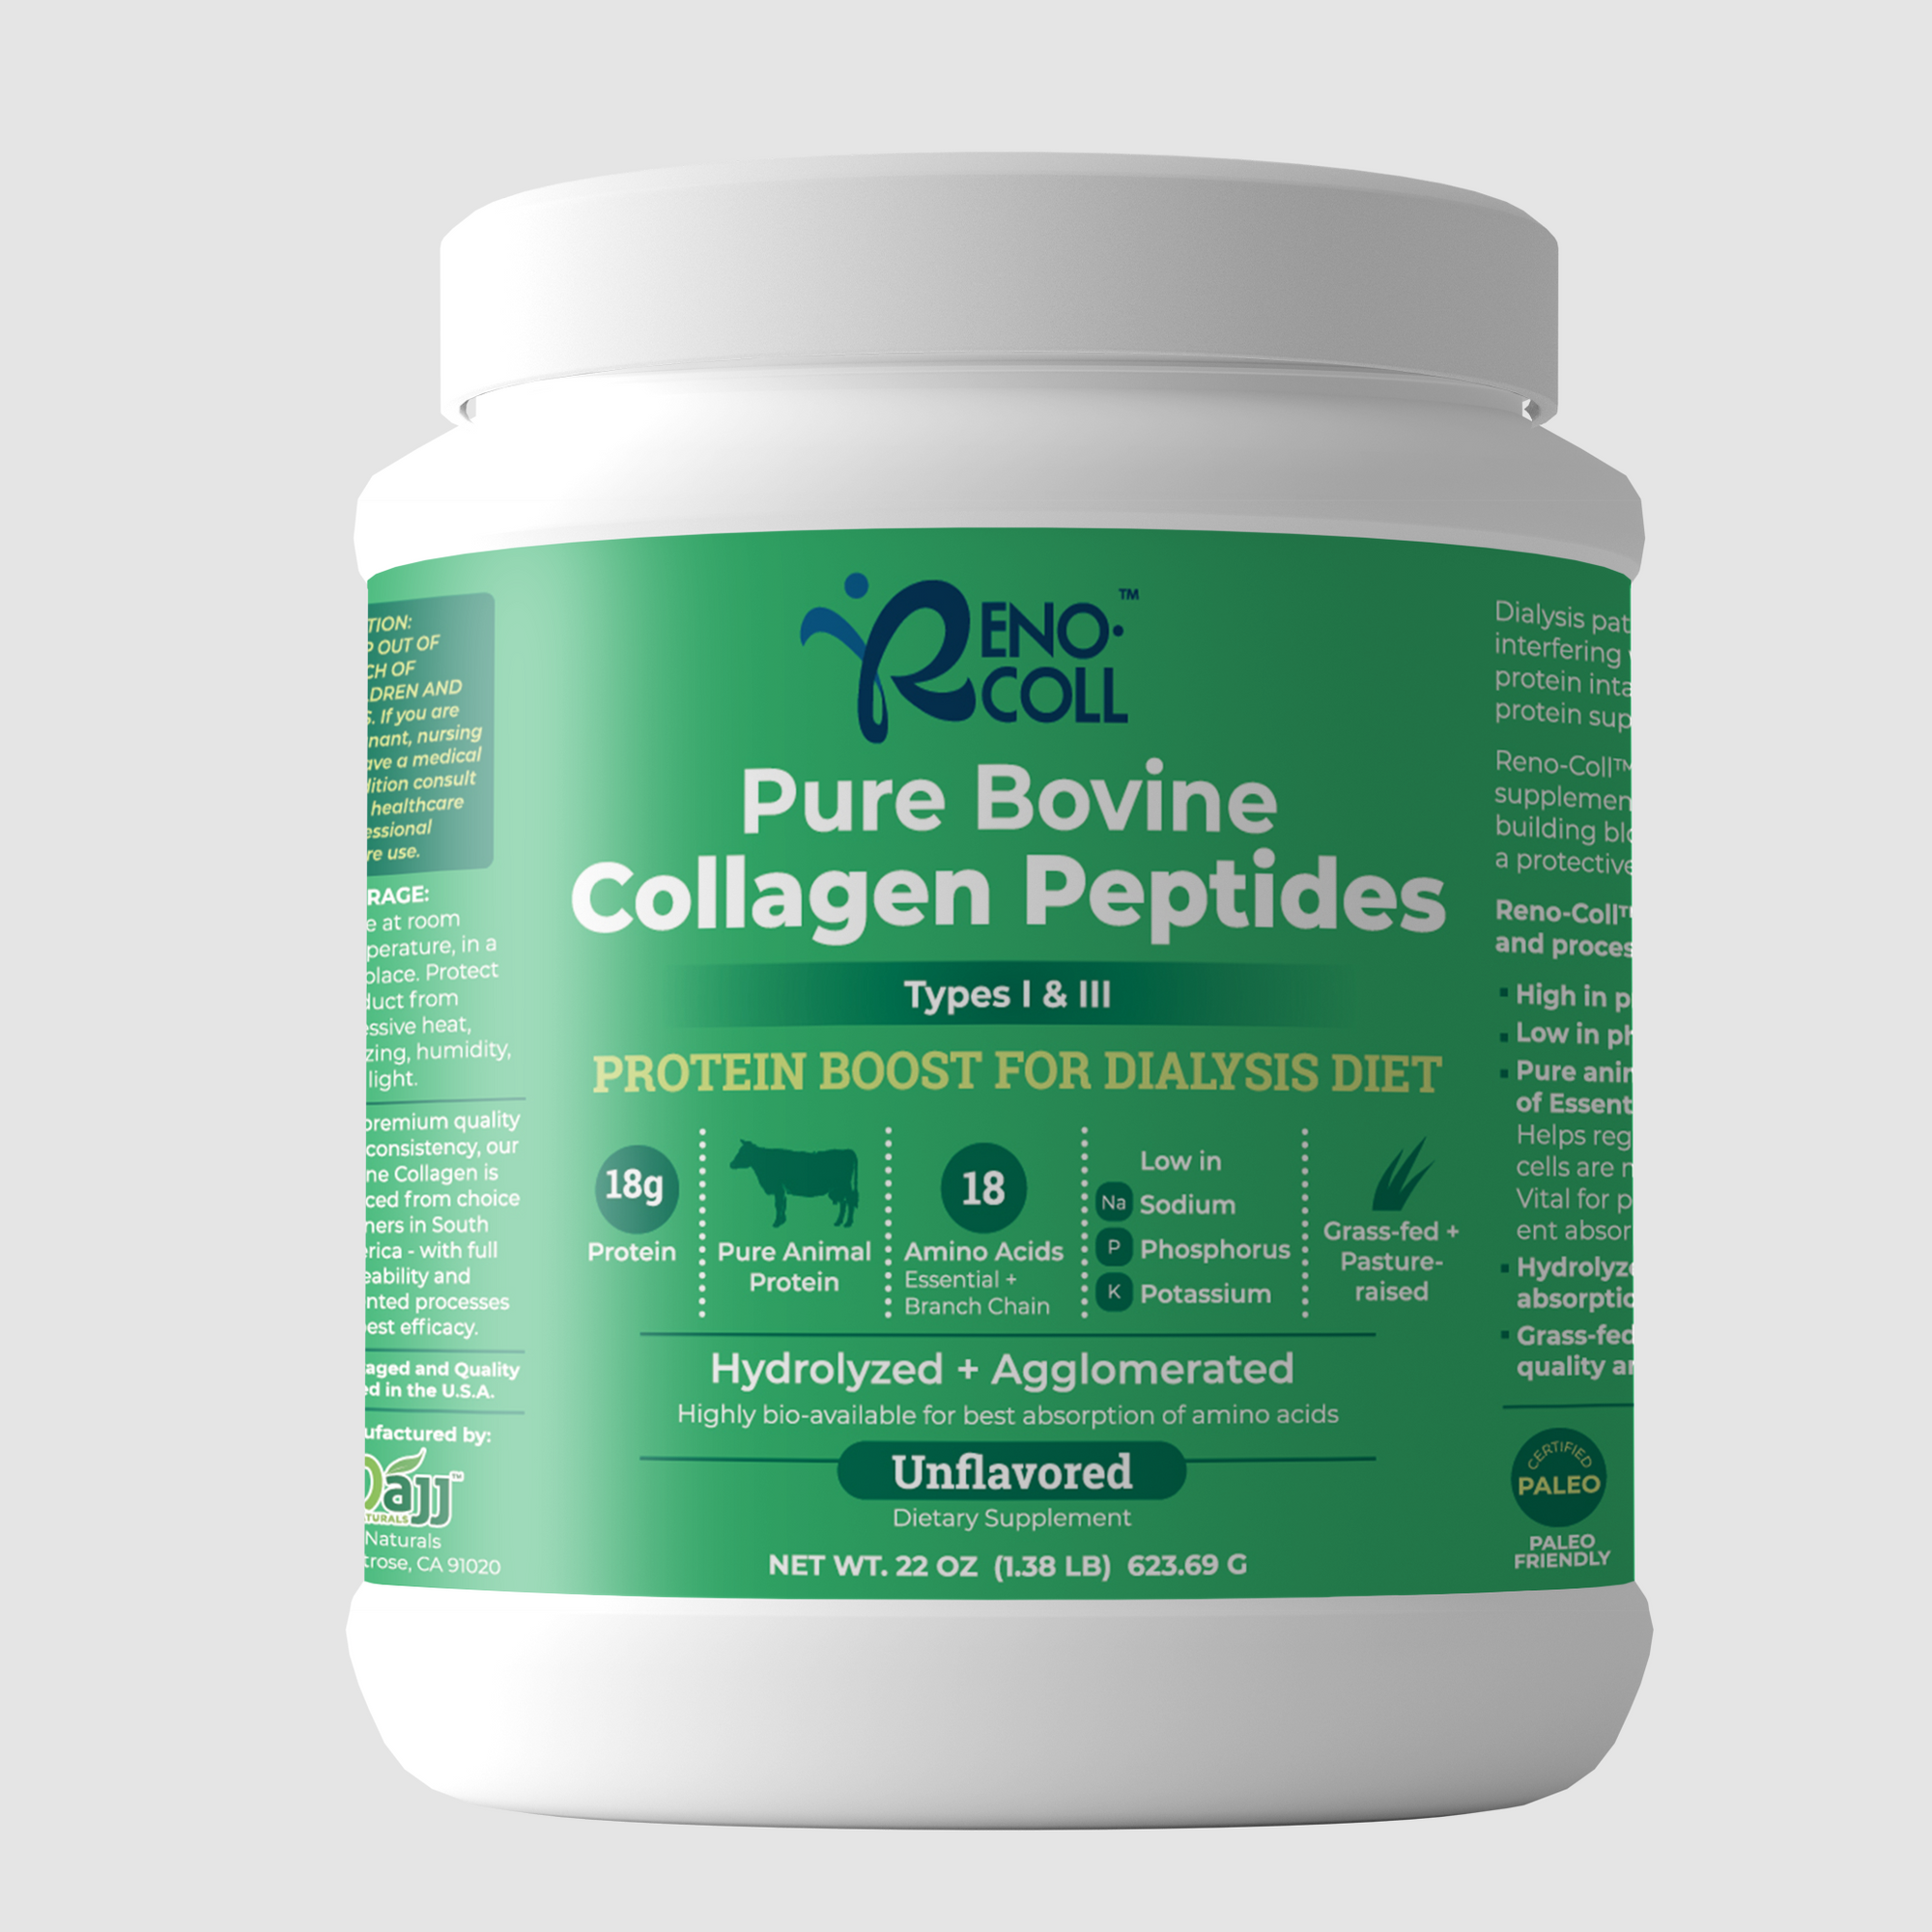 Reno-Coll 22 oz Pure Bovine Collagen Peptides product cannister.